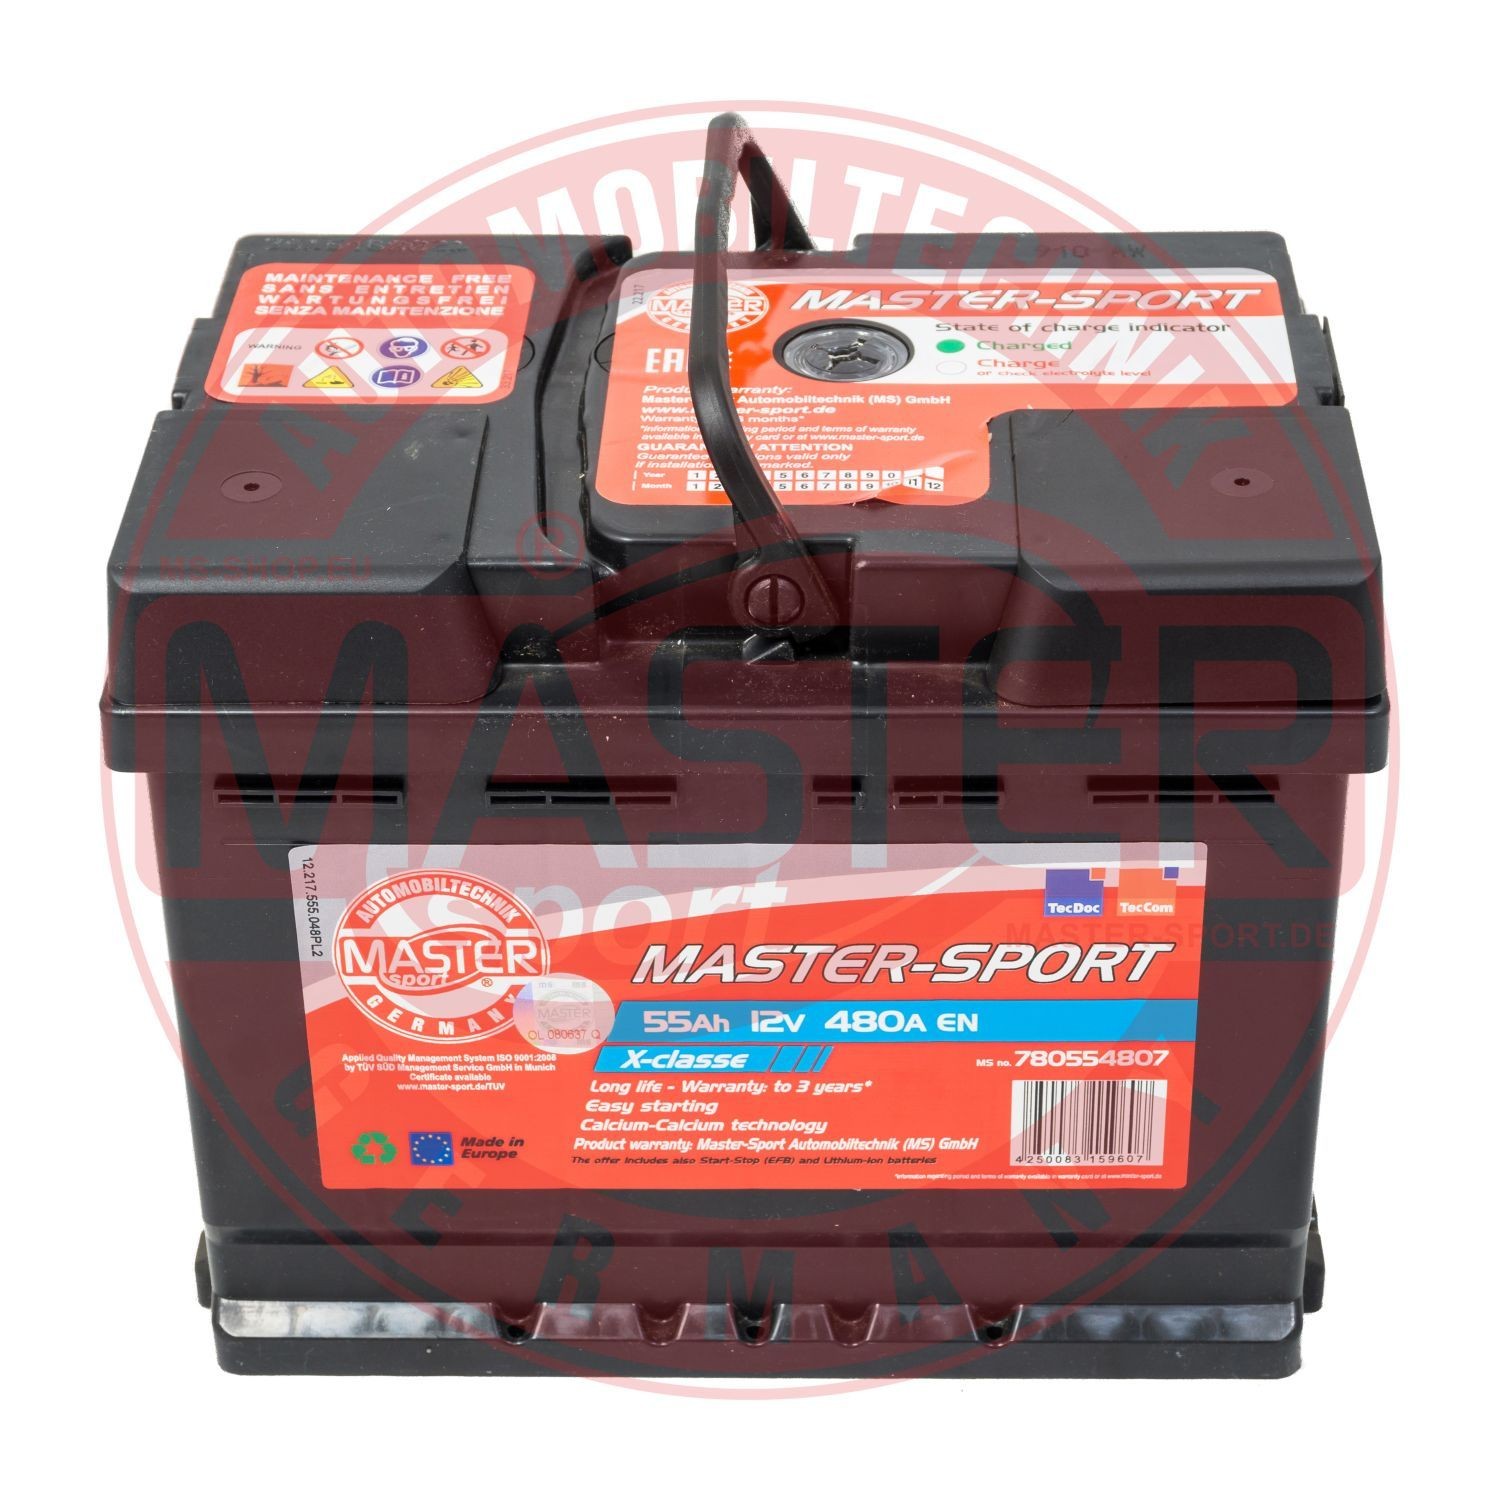 MASTER-SPORT 750554802 Battery 7701 401 539